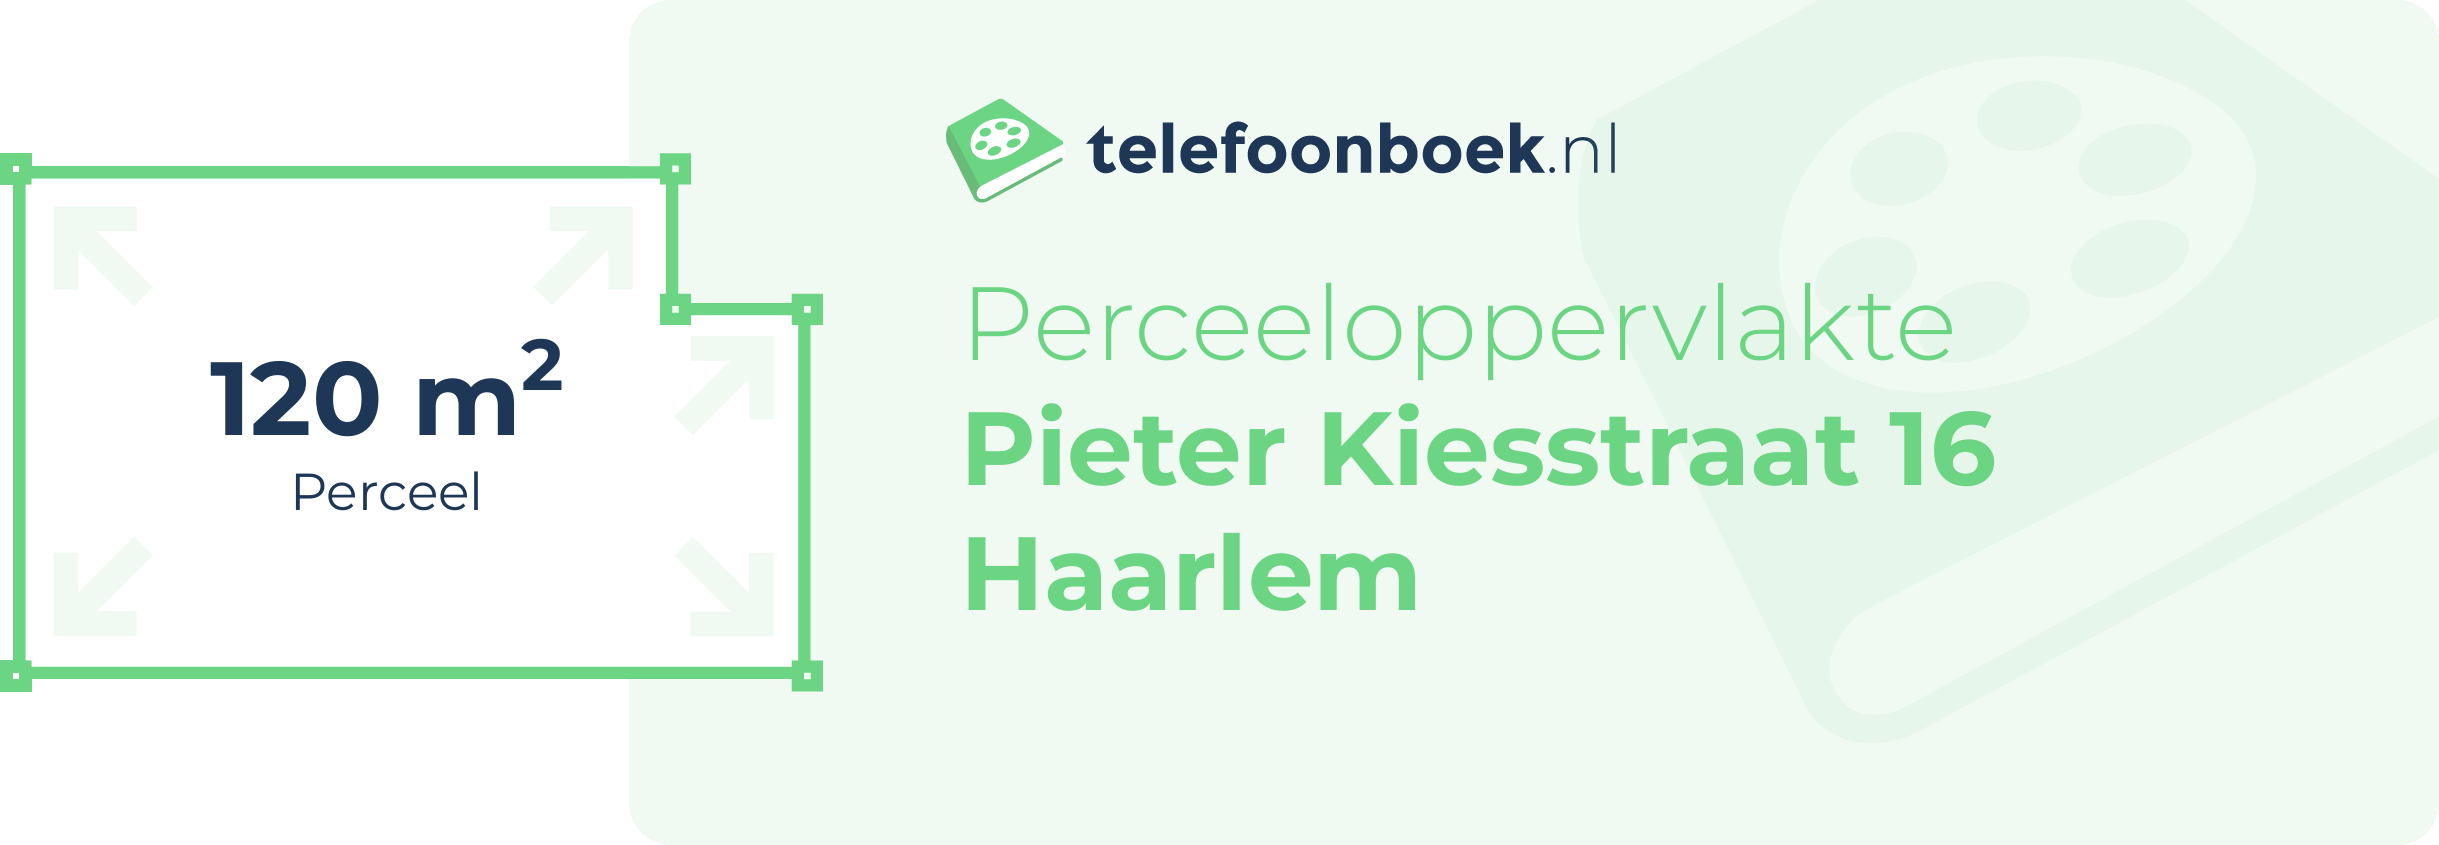 Perceeloppervlakte Pieter Kiesstraat 16 Haarlem